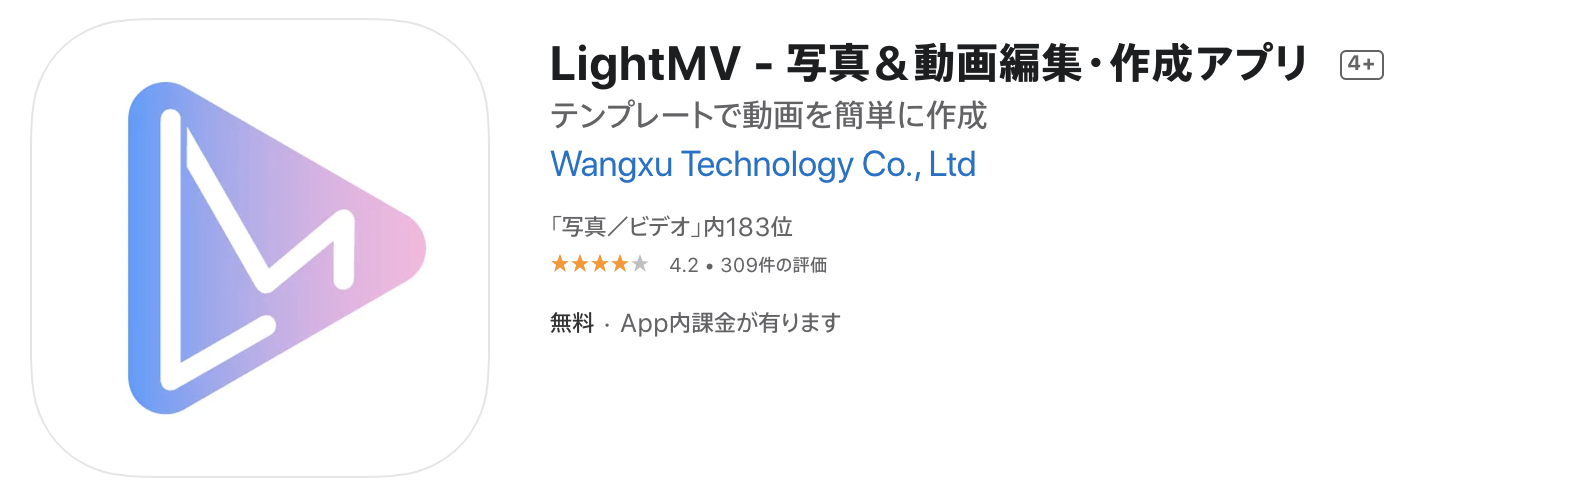 LightMV